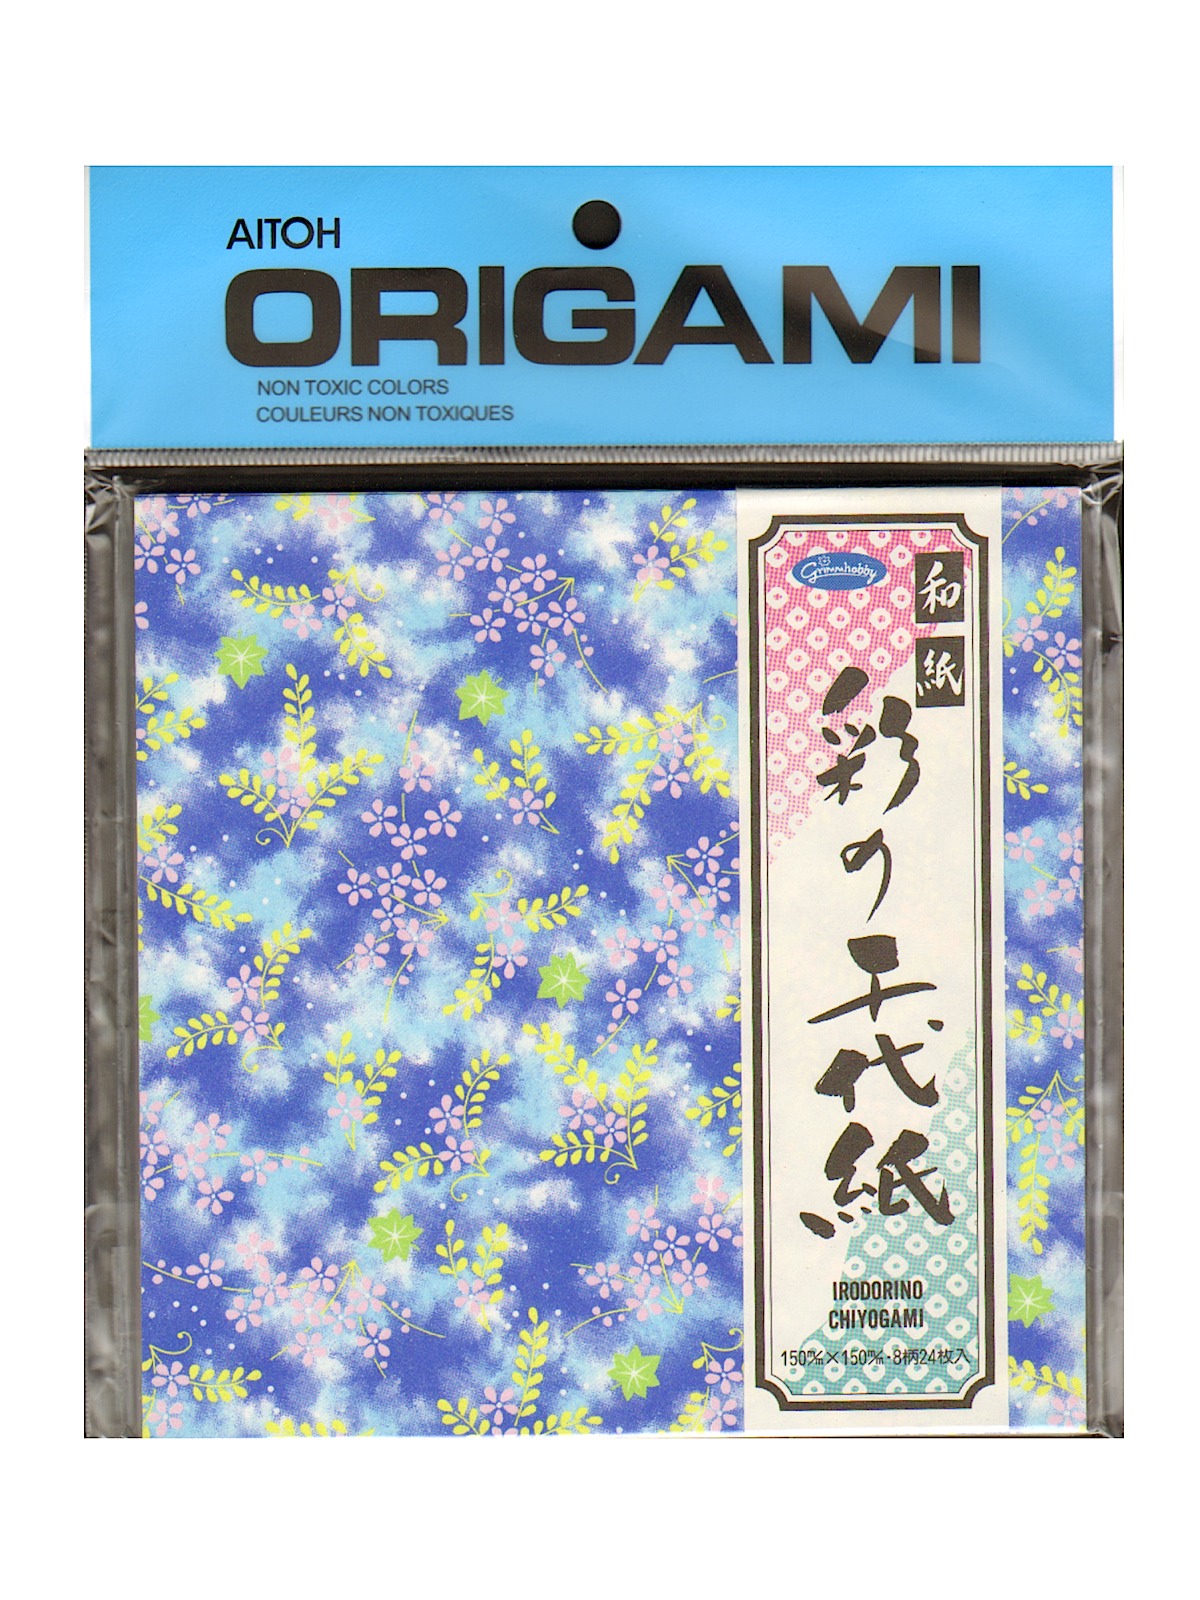 AITOH Origami Paper